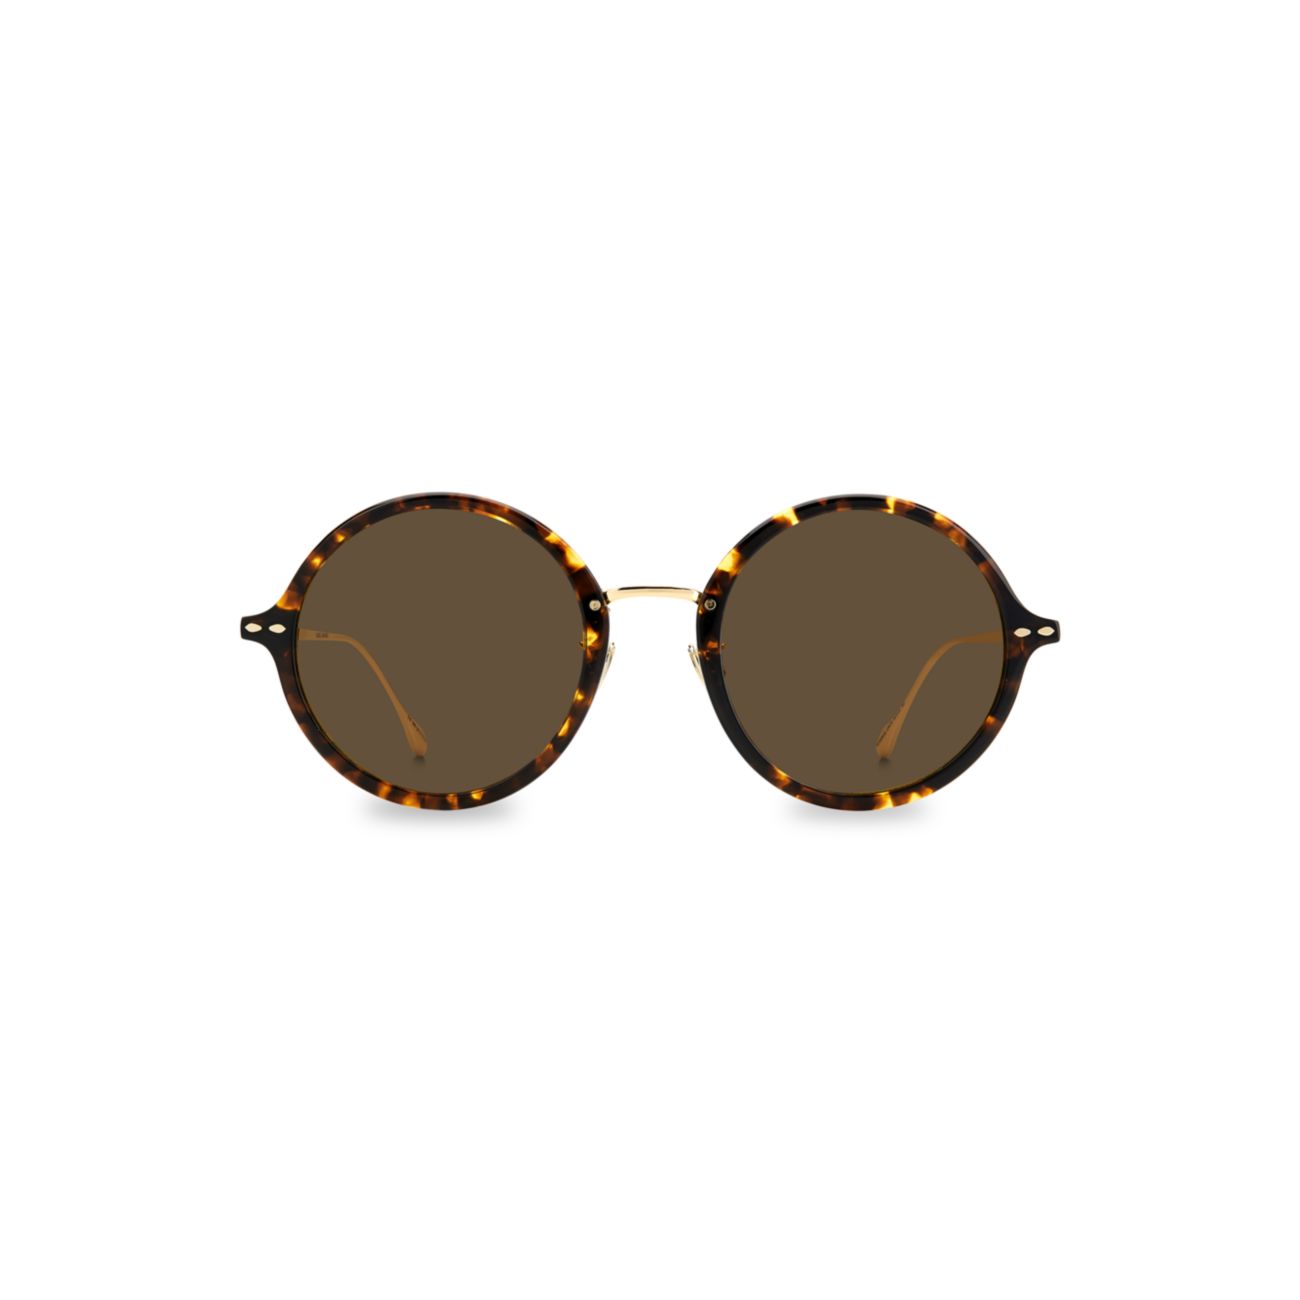 Круглые солнцезащитные очки 53 мм ISABEL MARANT